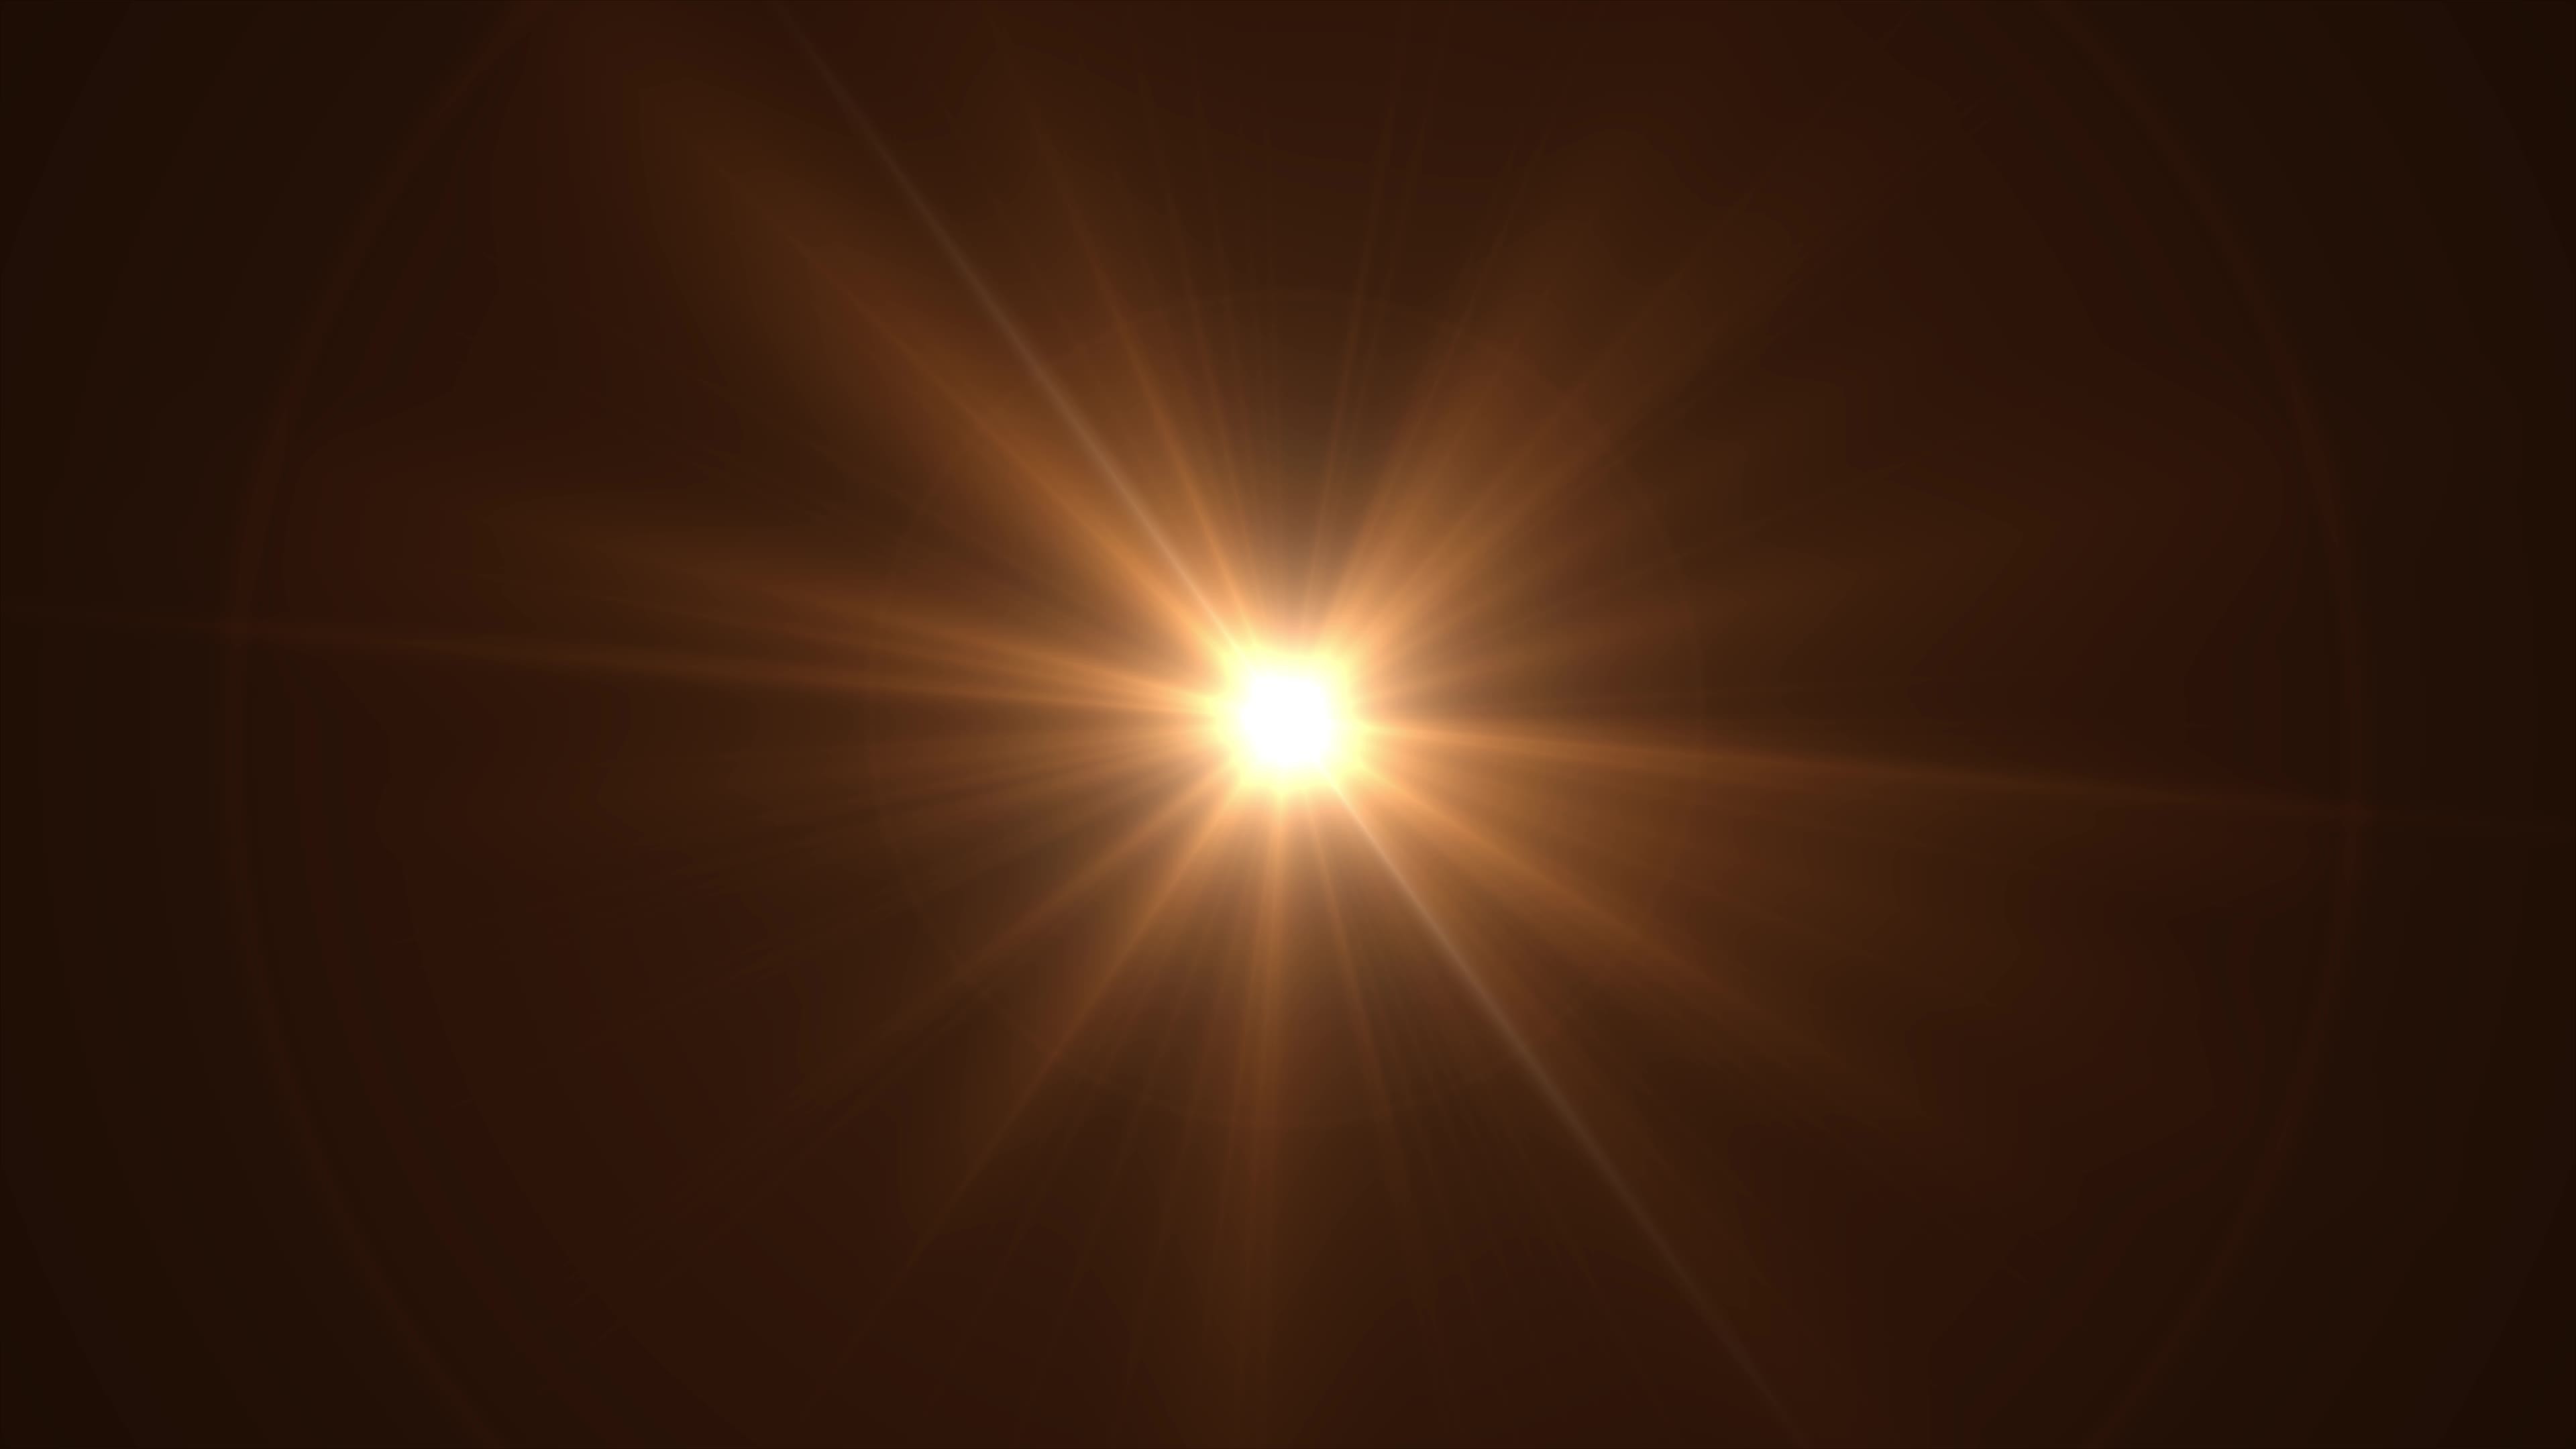 Đây là hình nền mặt trời đen lạ mắt chứa đầy sức mạnh và ẩn chứa sự bí ẩn. Hãy được khám phá và thưởng thức những tia nắng rực rỡ, cho tâm hồn tràn đầy năng lượng mới.